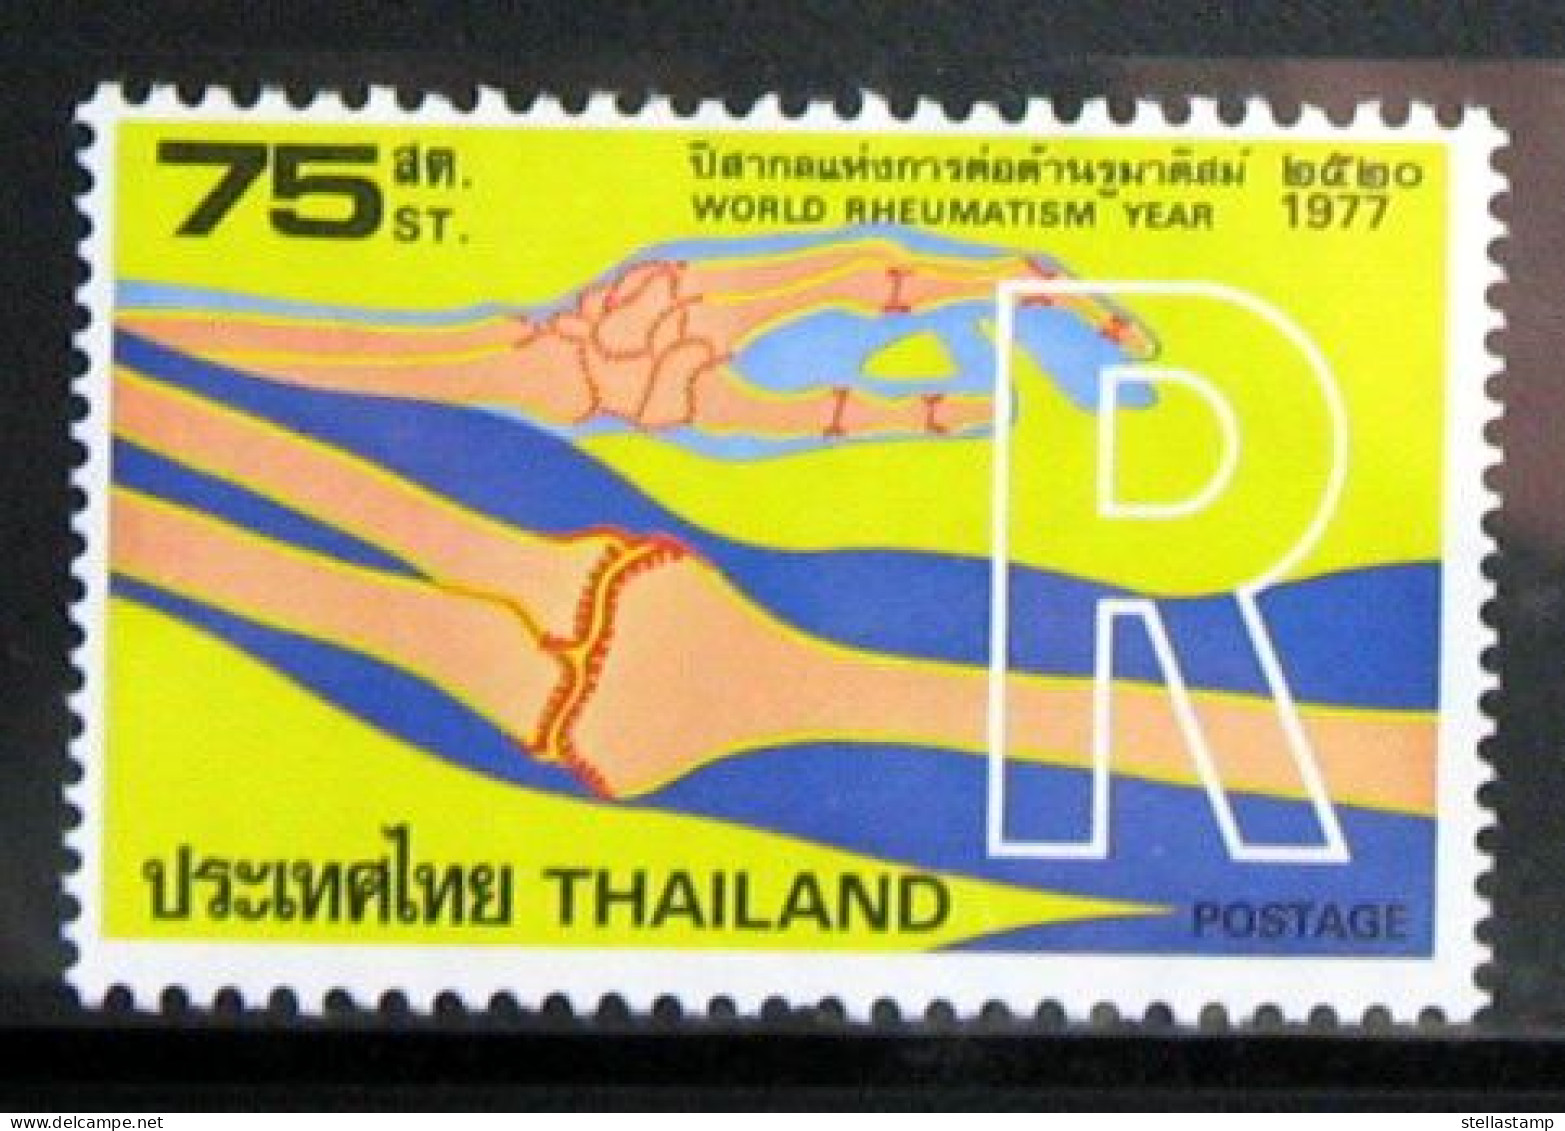 Thailand Stamp 1977 World Rheumatism Year - Thailand